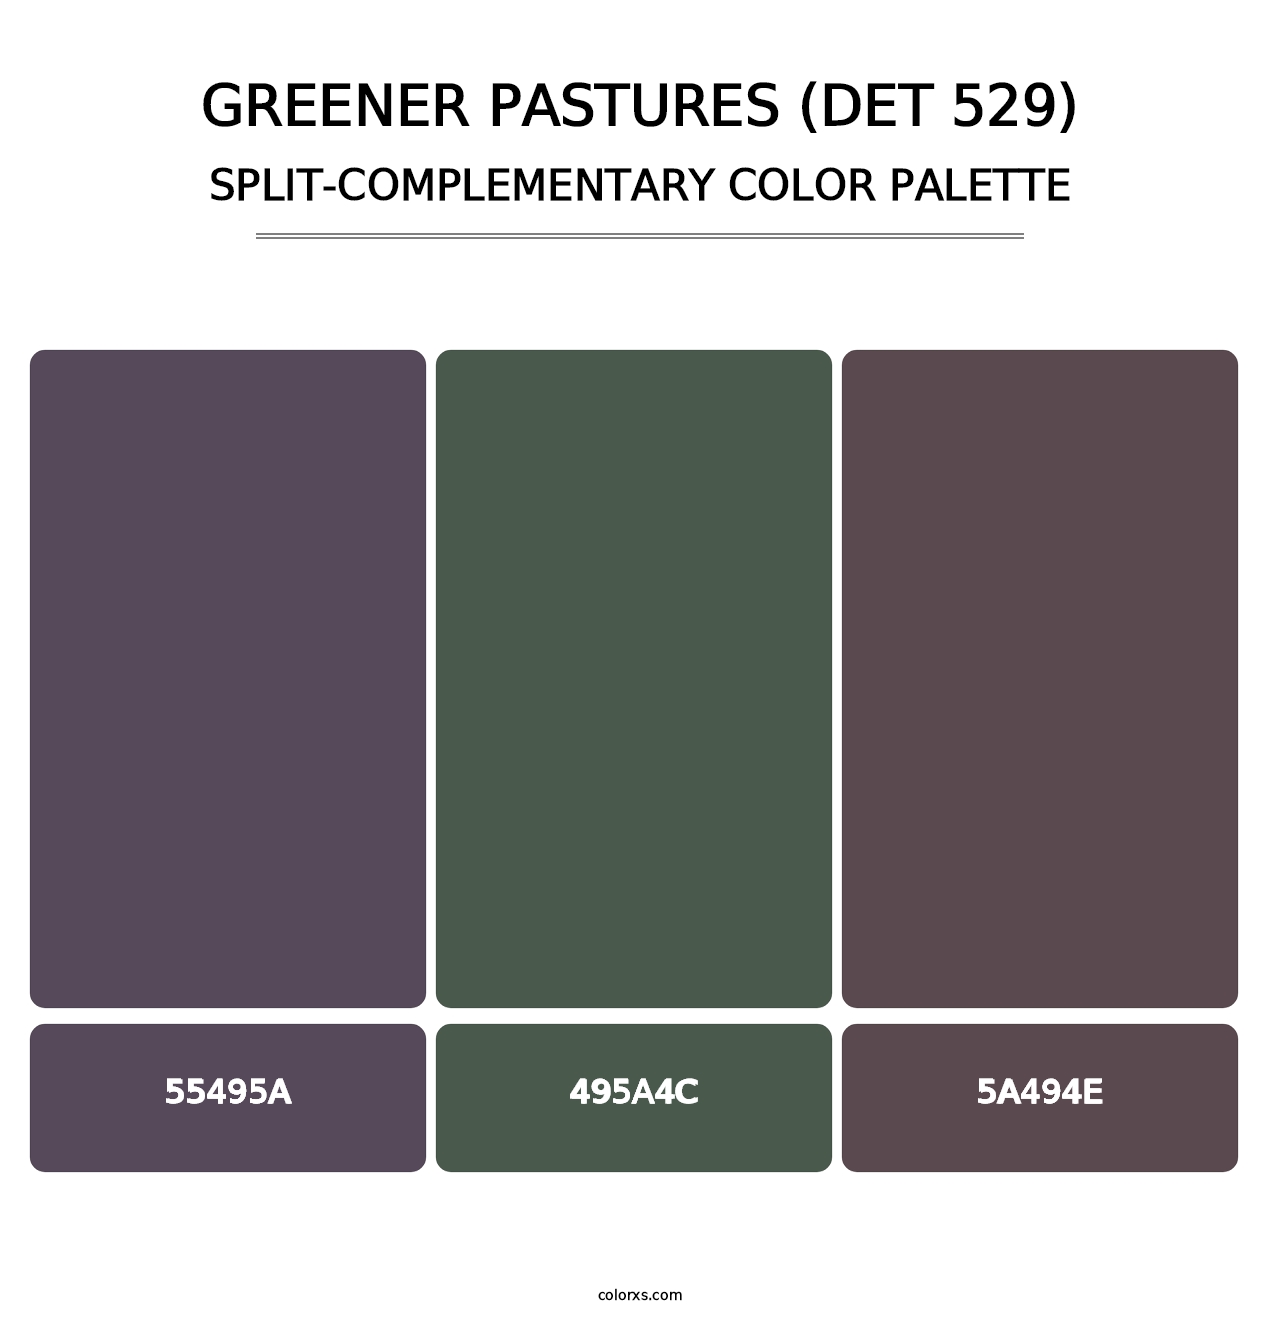 Greener Pastures (DET 529) - Split-Complementary Color Palette